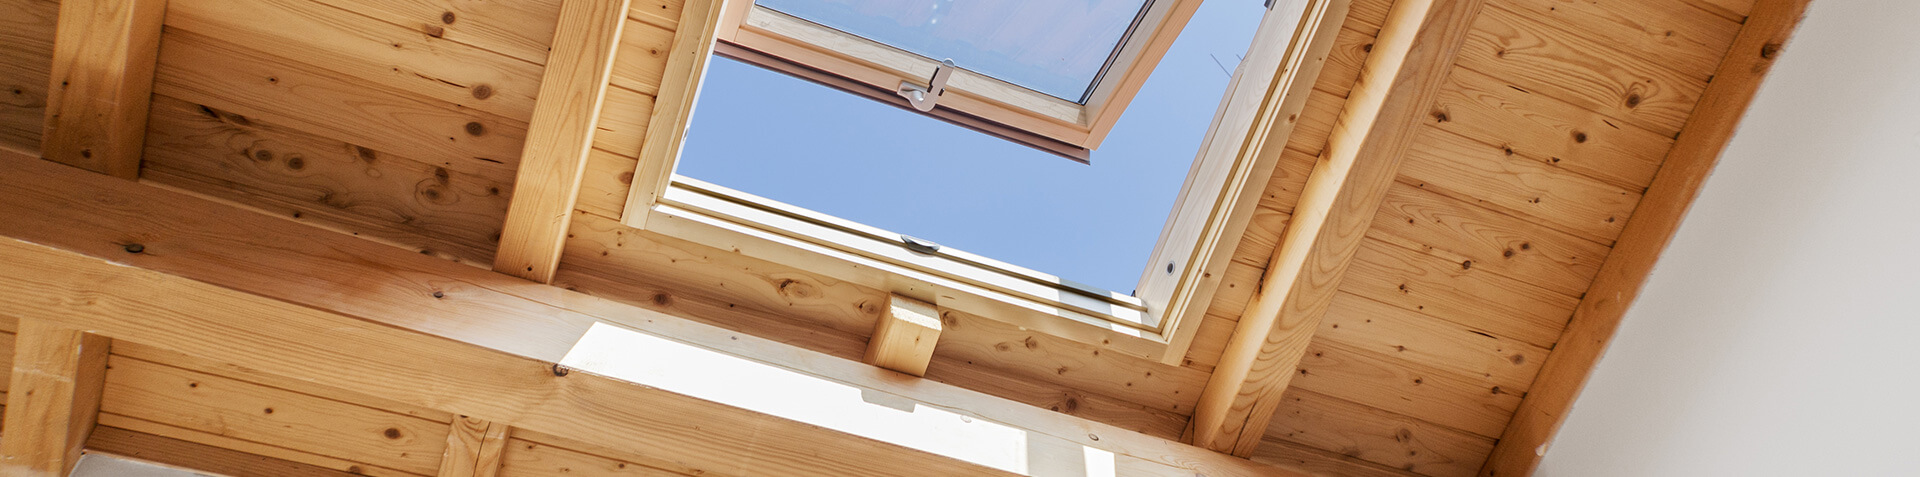 Ein geöffnetes Holzdachfenster mit blauem Himmel